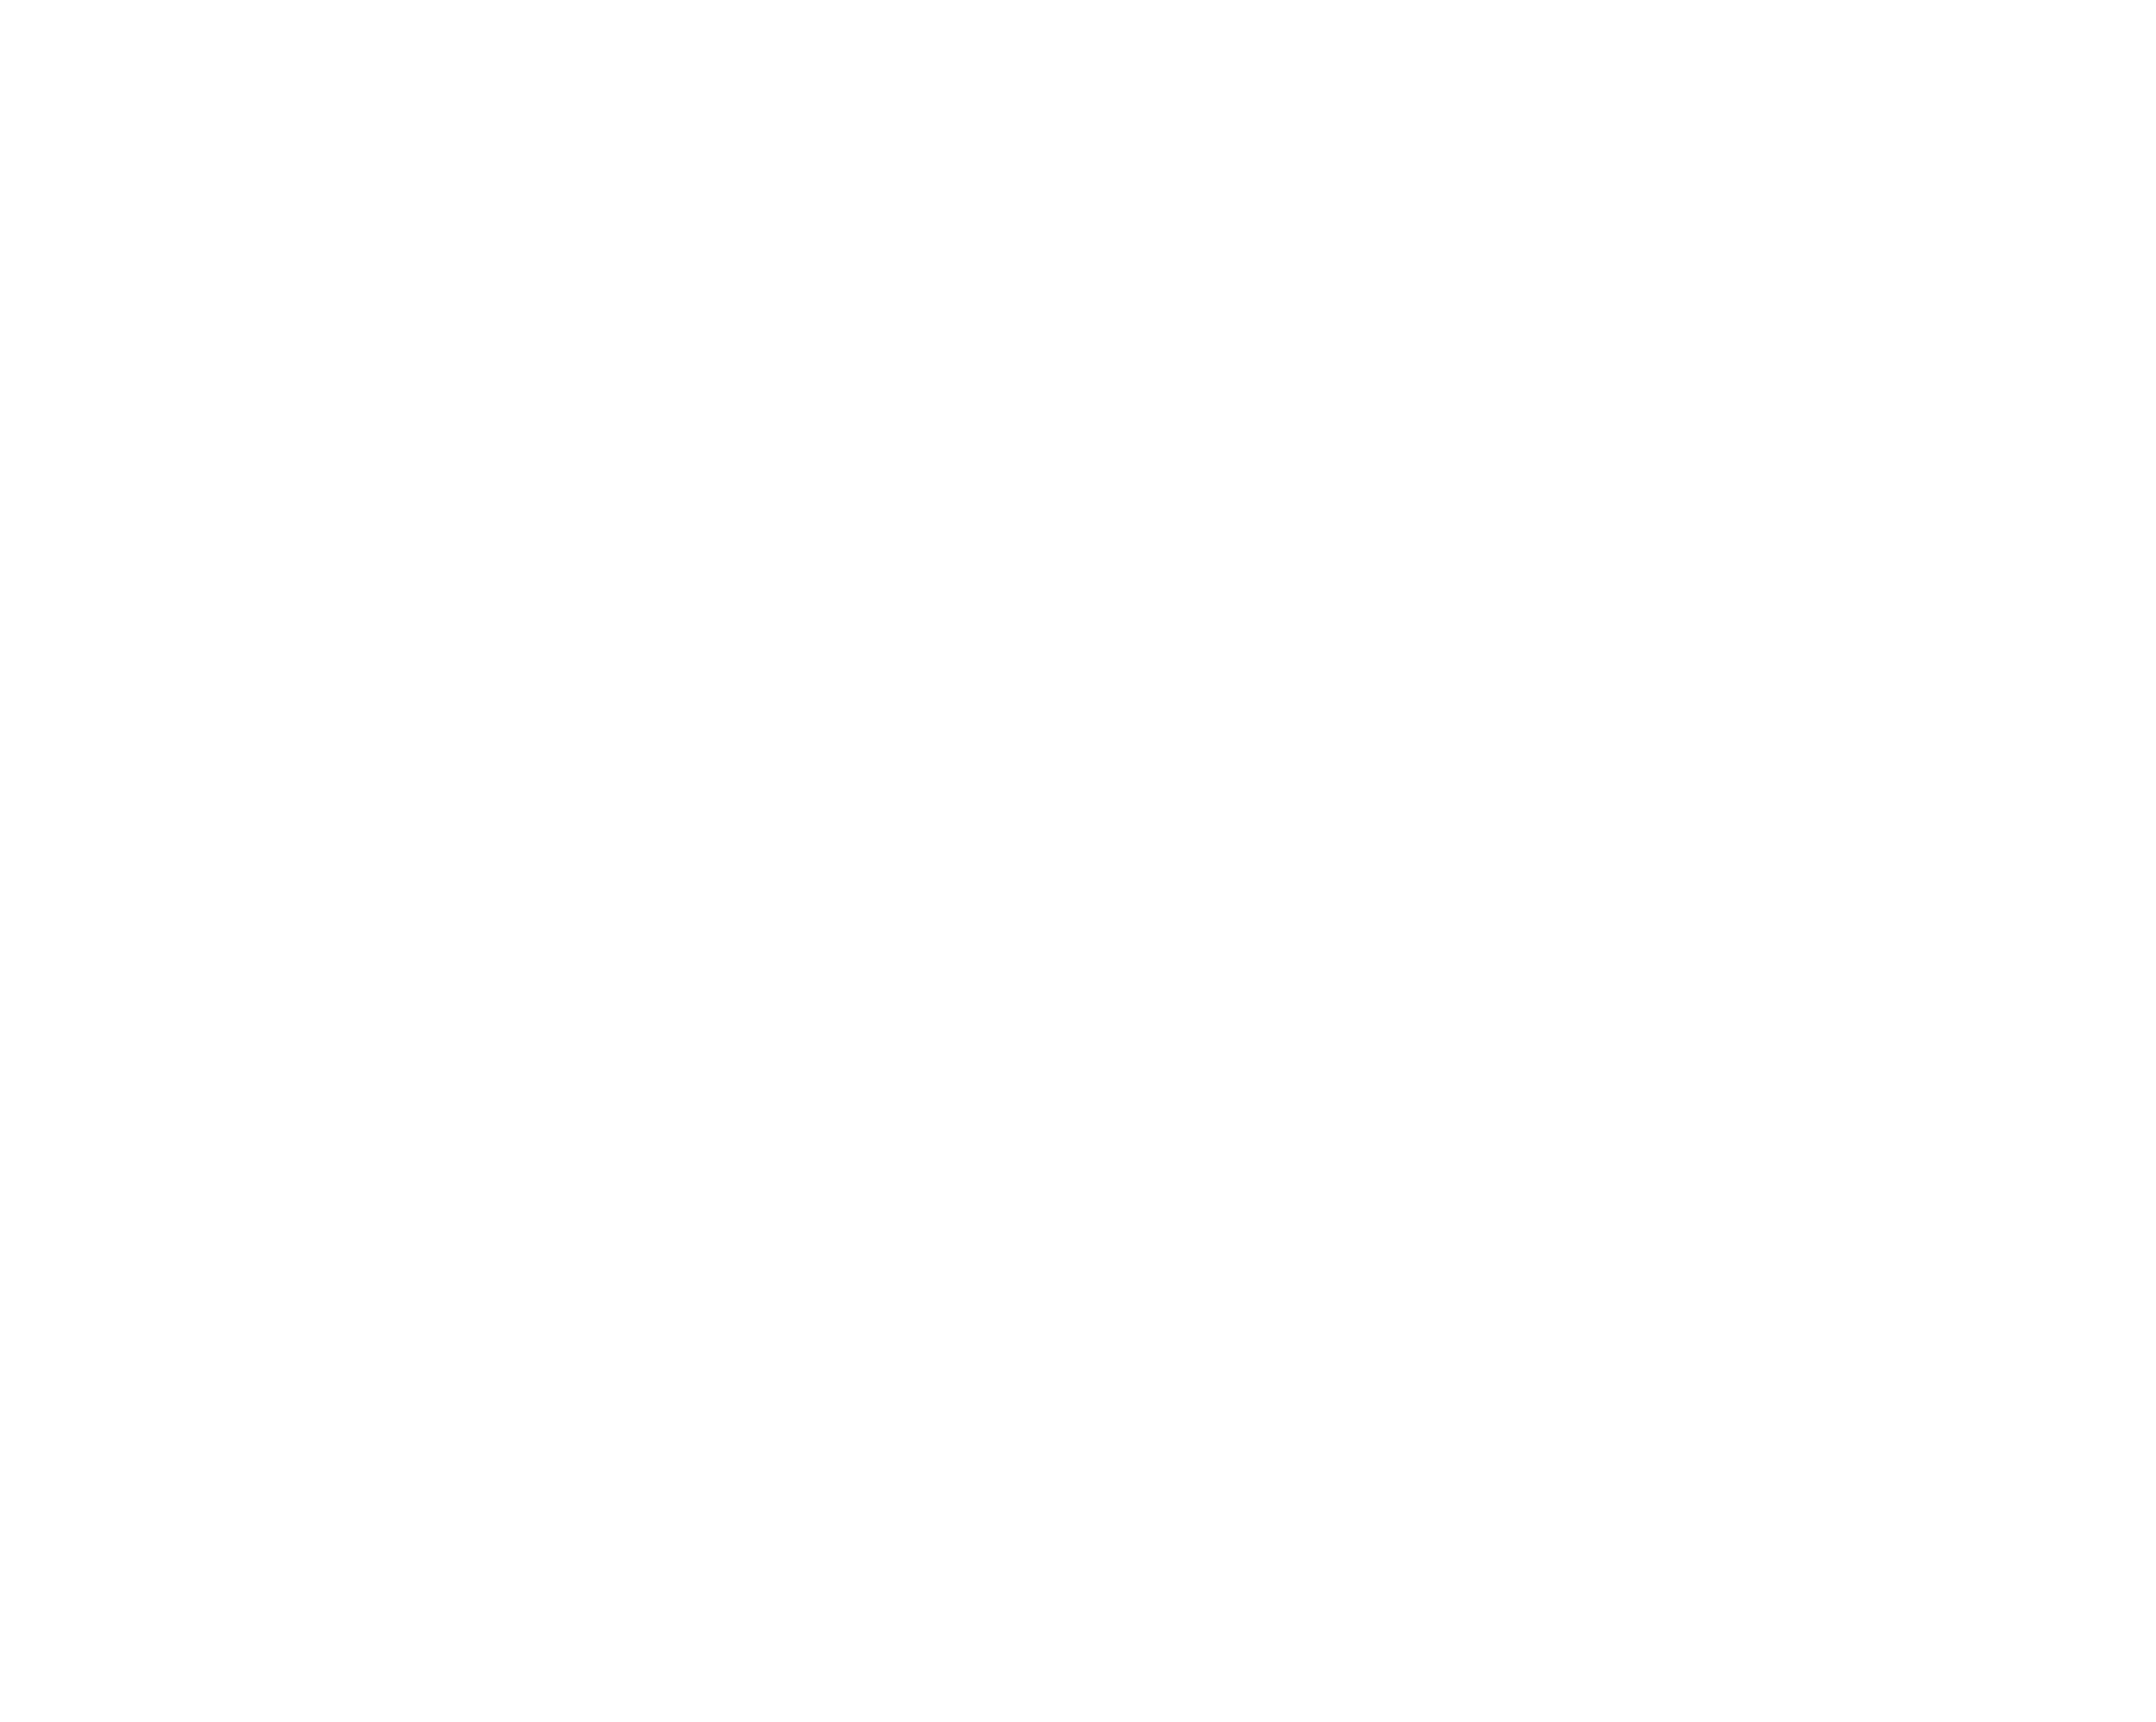 sql server logo transparent